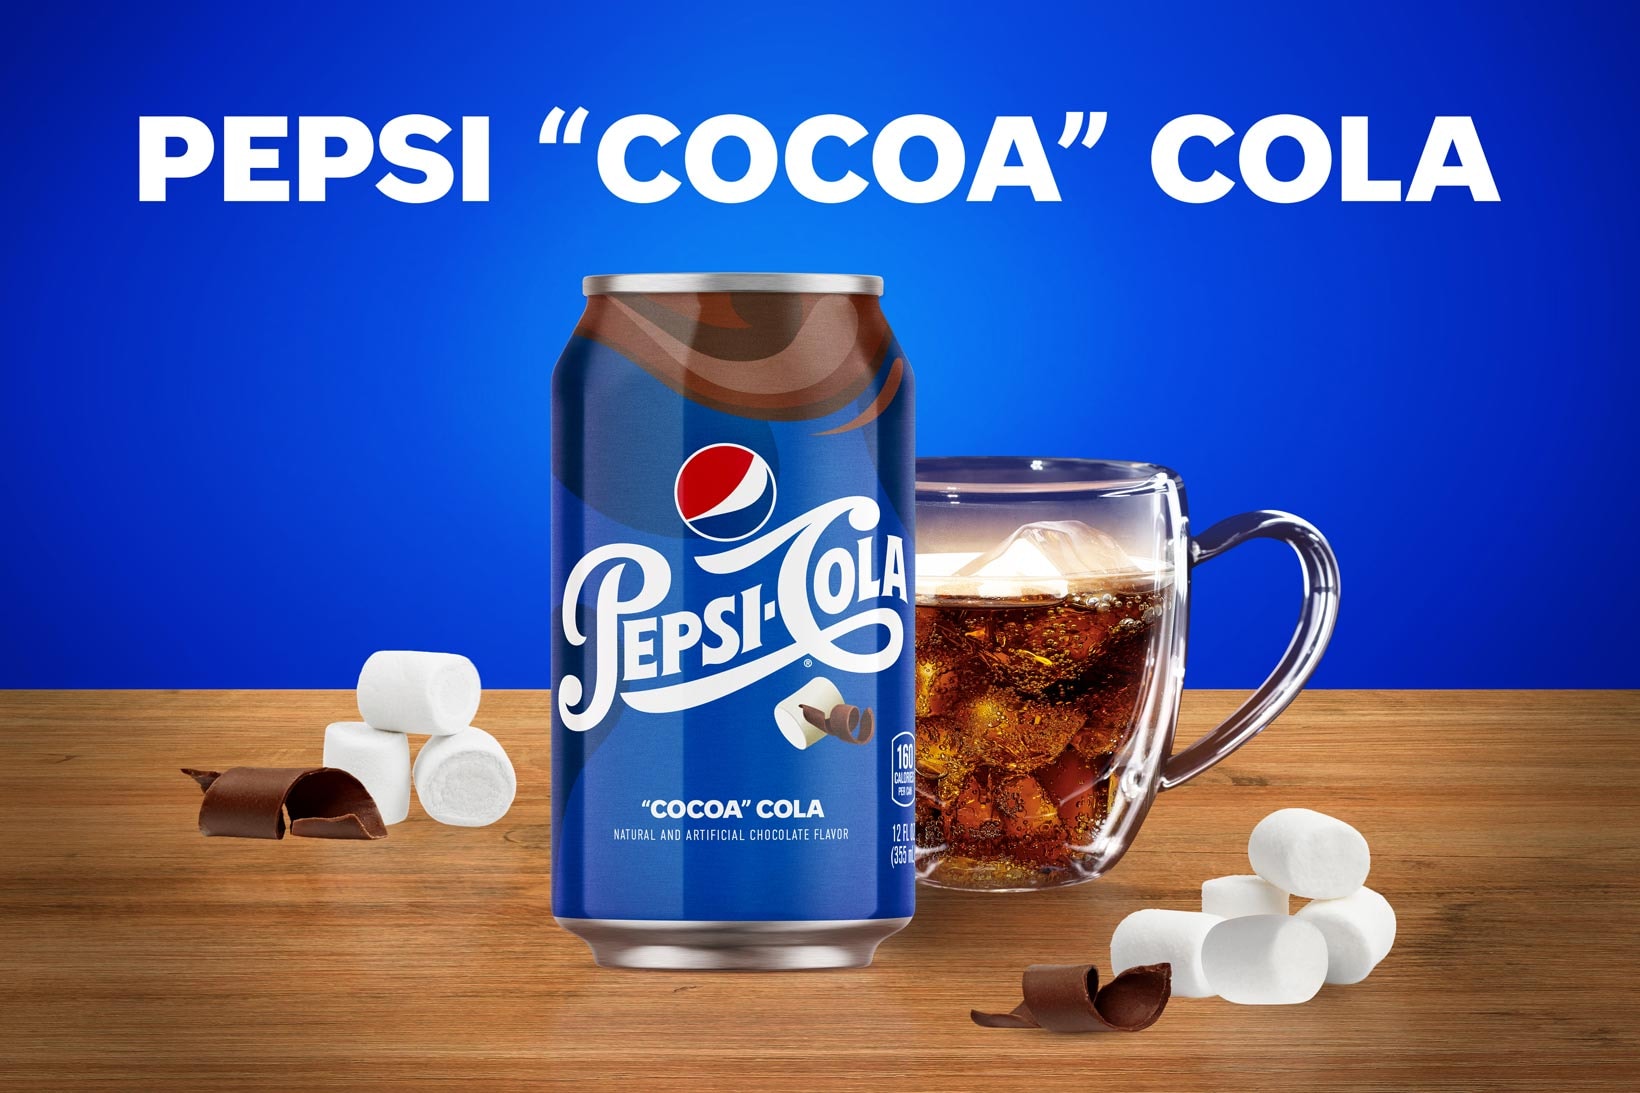 Pepsi Cocoa Cola Soda Chocolate Marshmallow Flavor 2021